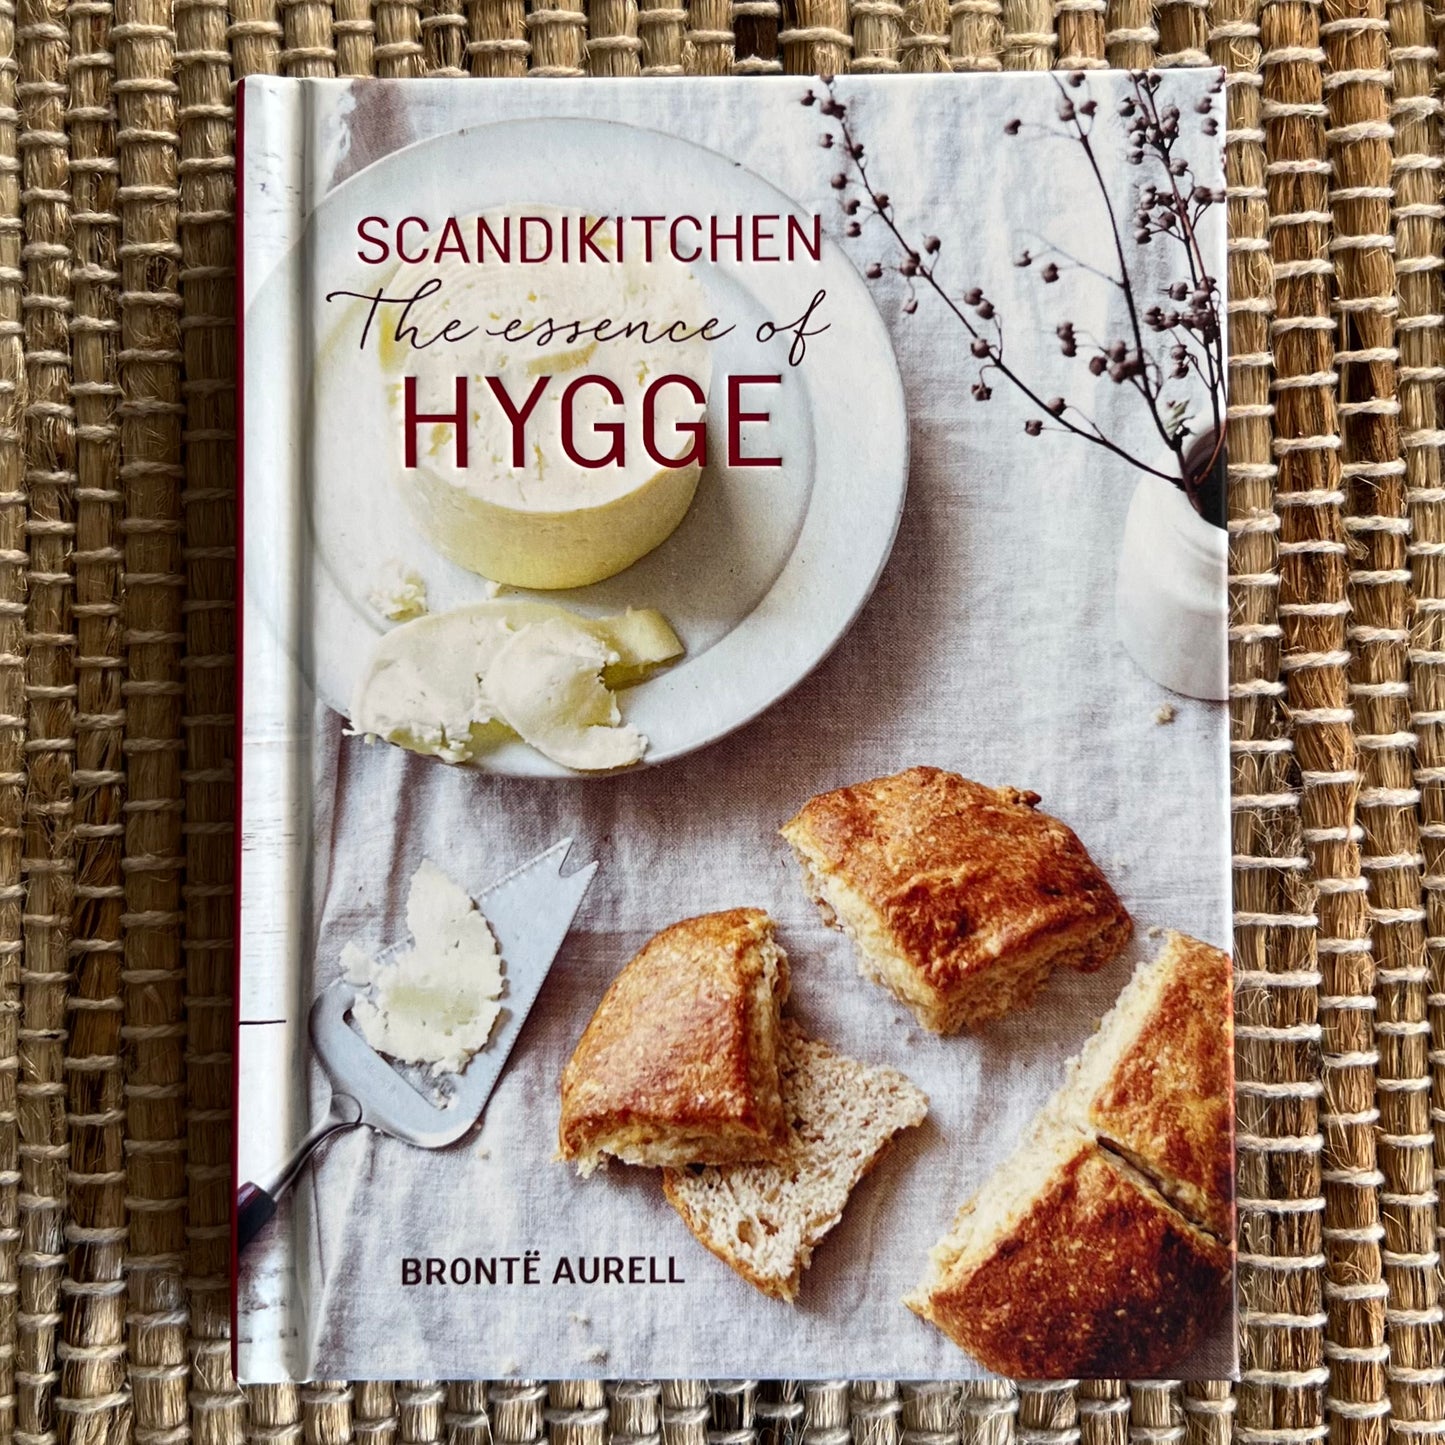 Scandikitchen The Essence of Hygge By Bronte Aurell